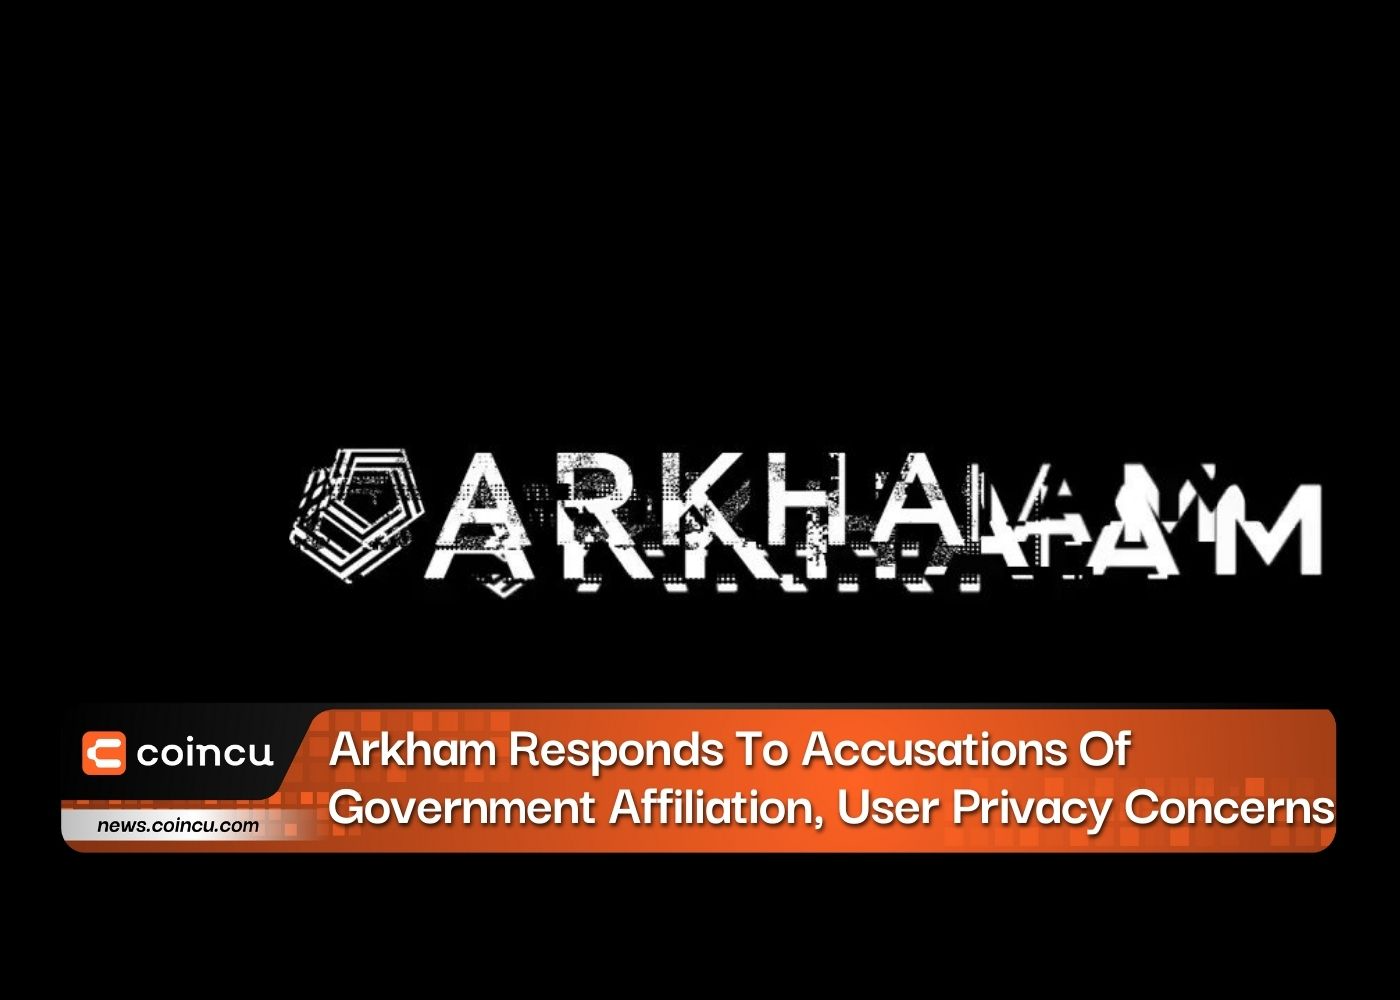 Arkham reagiert auf Vorwürfe der Regierungszugehörigkeit und Bedenken hinsichtlich der Privatsphäre der Nutzer